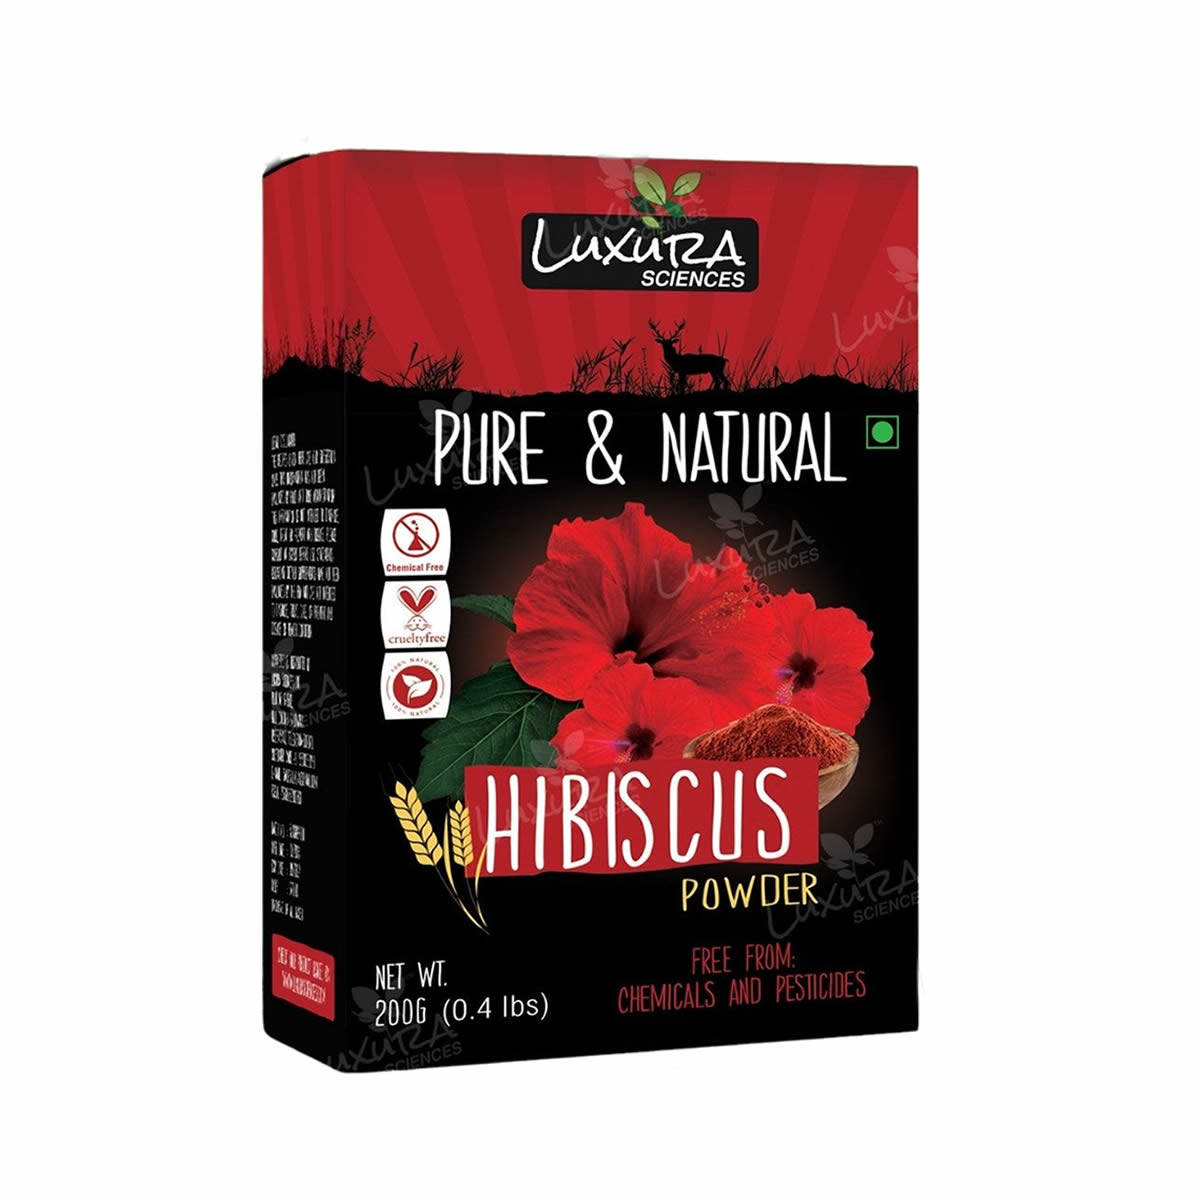 Luxura Sciences Hibiscus Powder